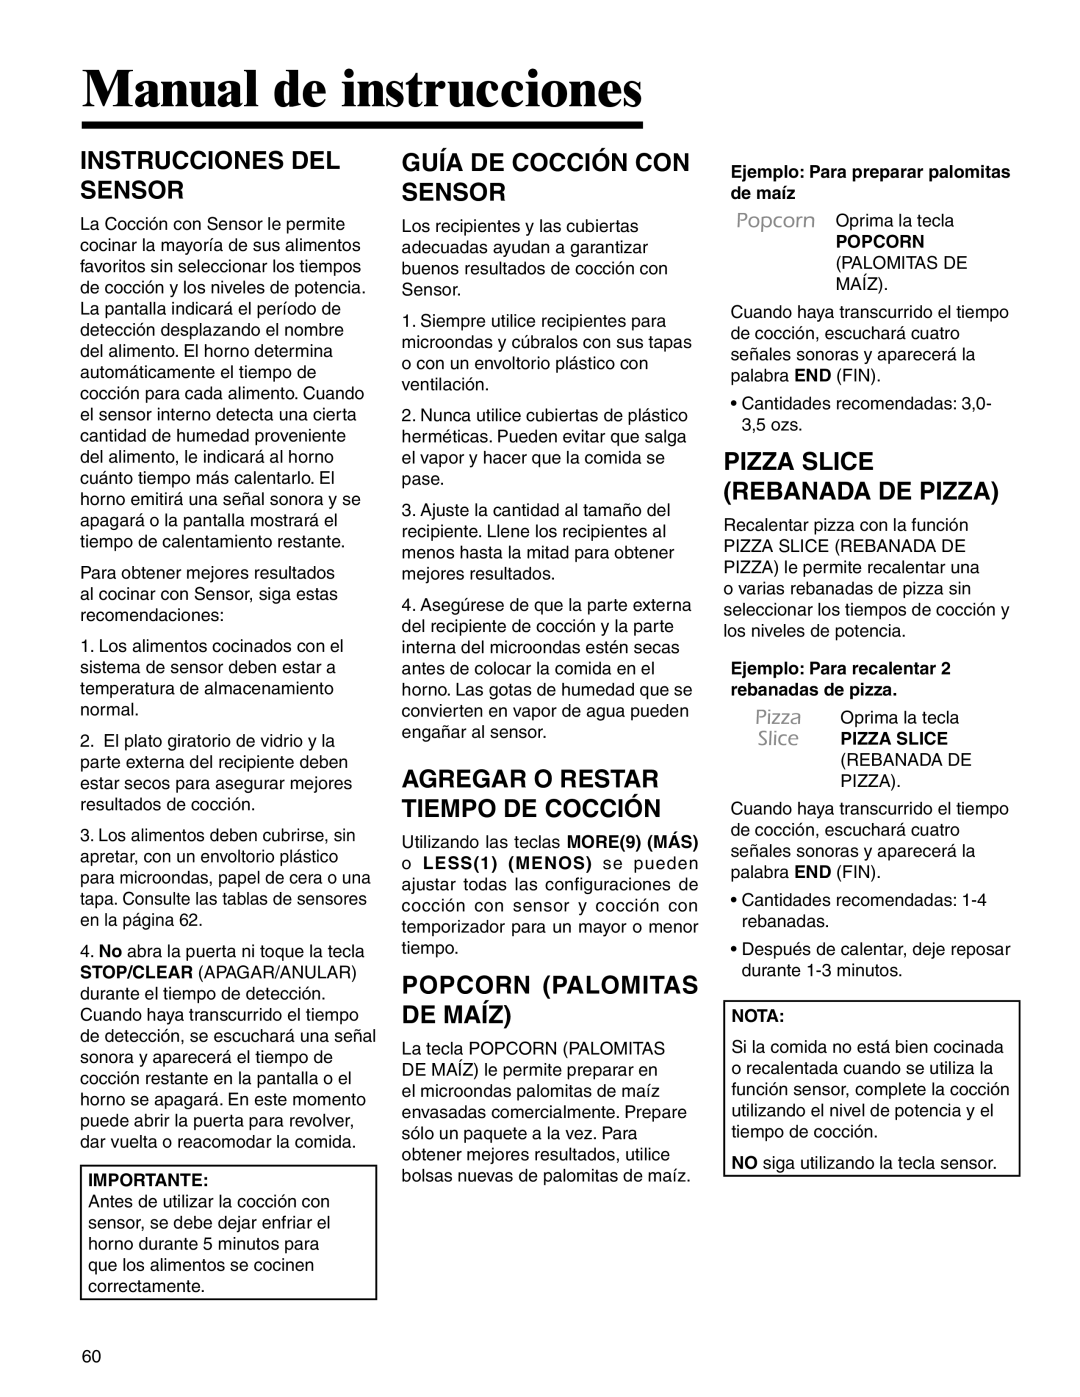 Amana AMC2206BA Instrucciones Del Sensor, Guía De Cocción Con Sensor, Popcorn Palomitas De Maíz, Manual de instrucciones 